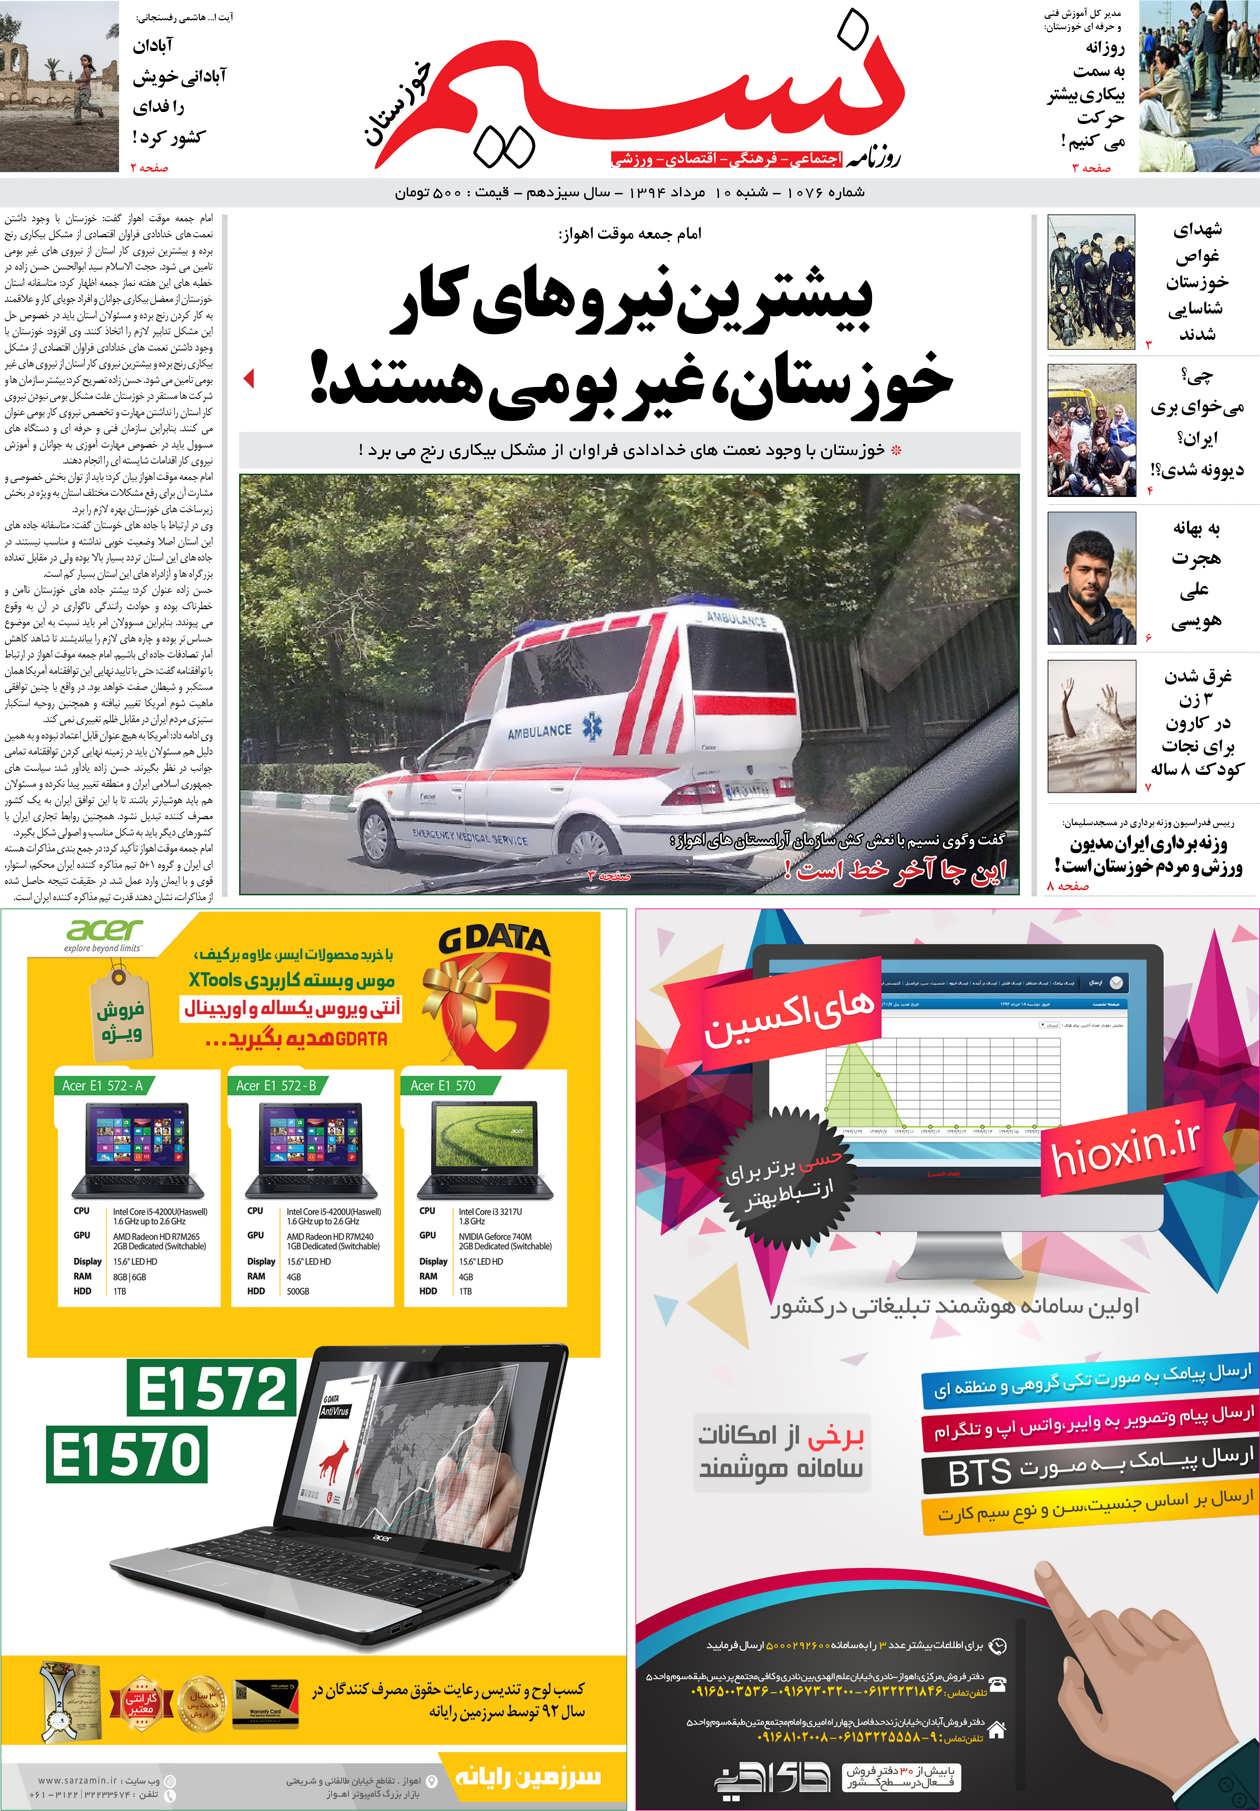 صفحه اصلی روزنامه نسیم شماره 1076